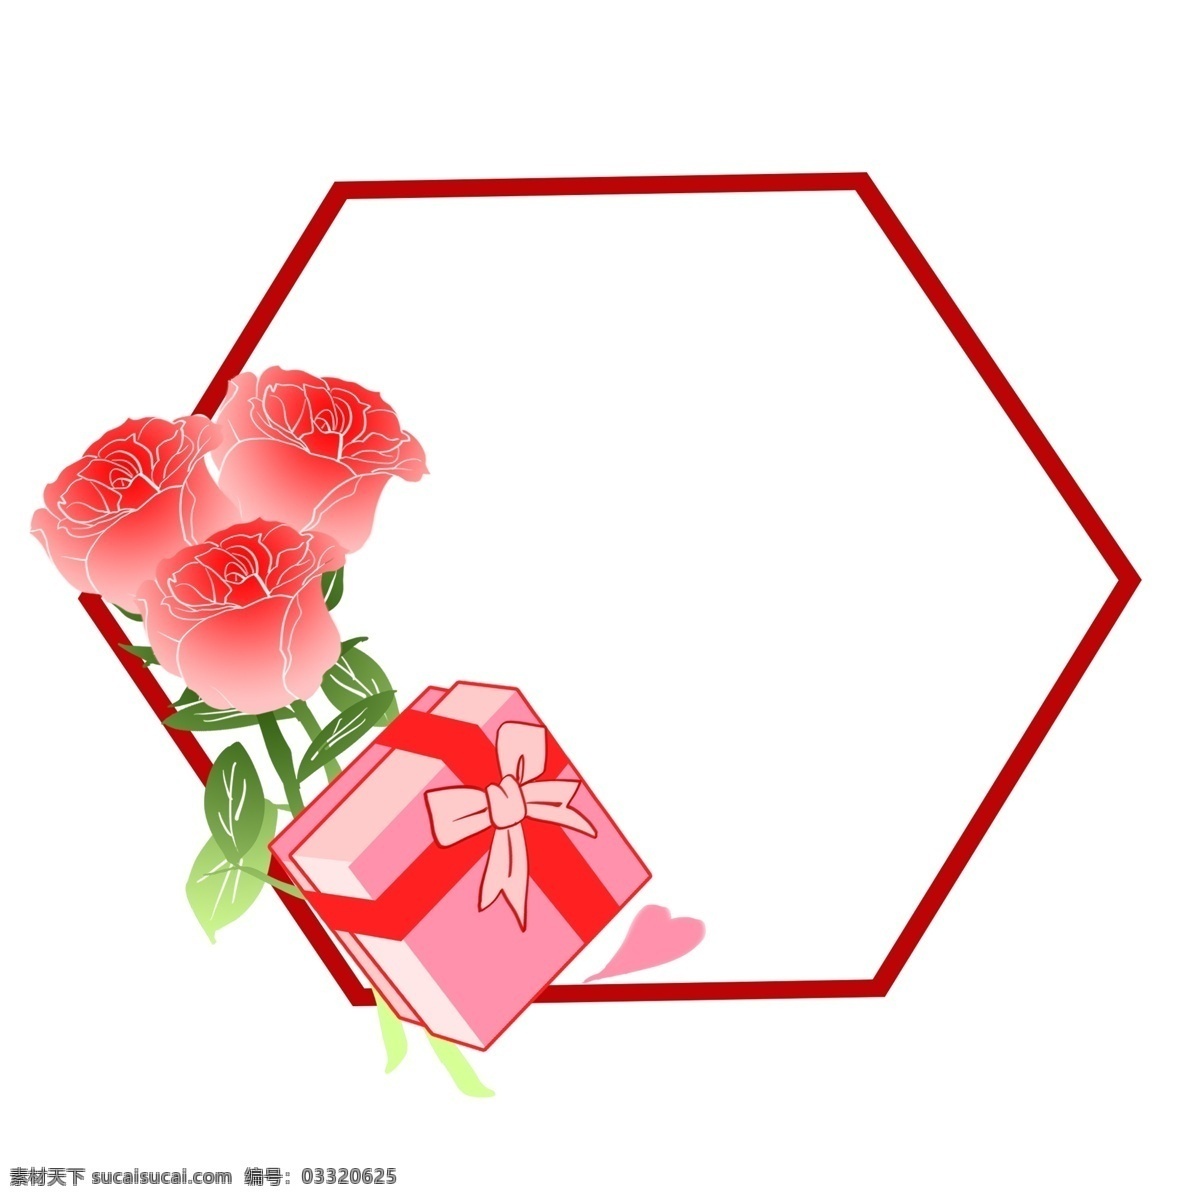 红色 礼盒 鲜花 边框 漂亮 卡通鲜花边框 手绘鲜花边框 红色的礼盒 绿色的叶子